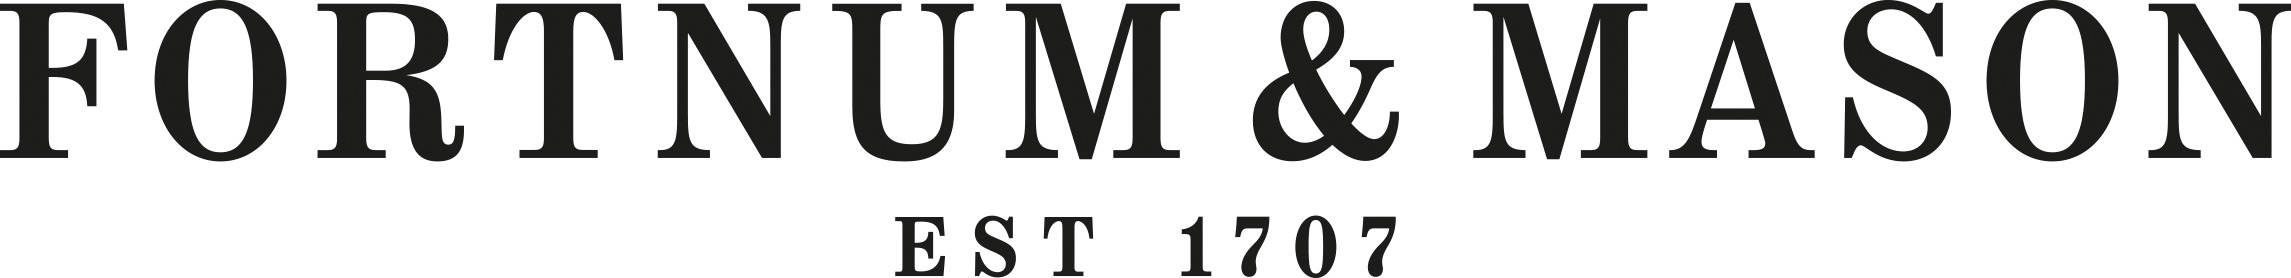 Fortnum & Mason Logo 1707 icons